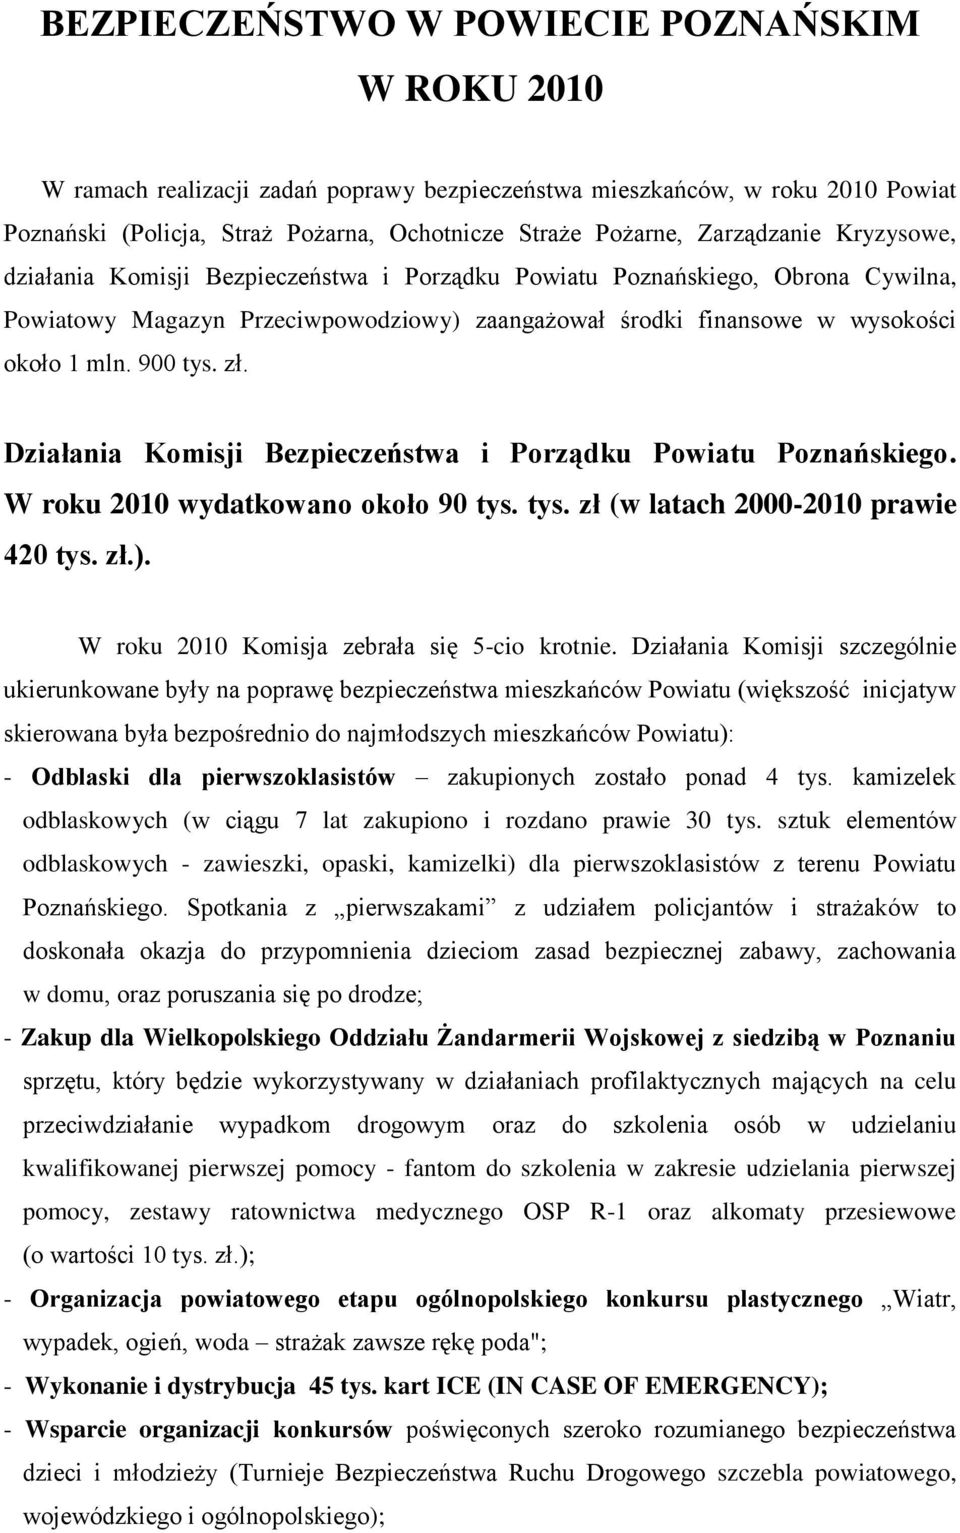 900 tys. zł. Działania Komisji Bezpieczeństwa i Porządku Powiatu Poznańskiego. W roku 2010 wydatkowano około 90 tys. tys. zł (w latach 2000-2010 prawie 420 tys. zł.).